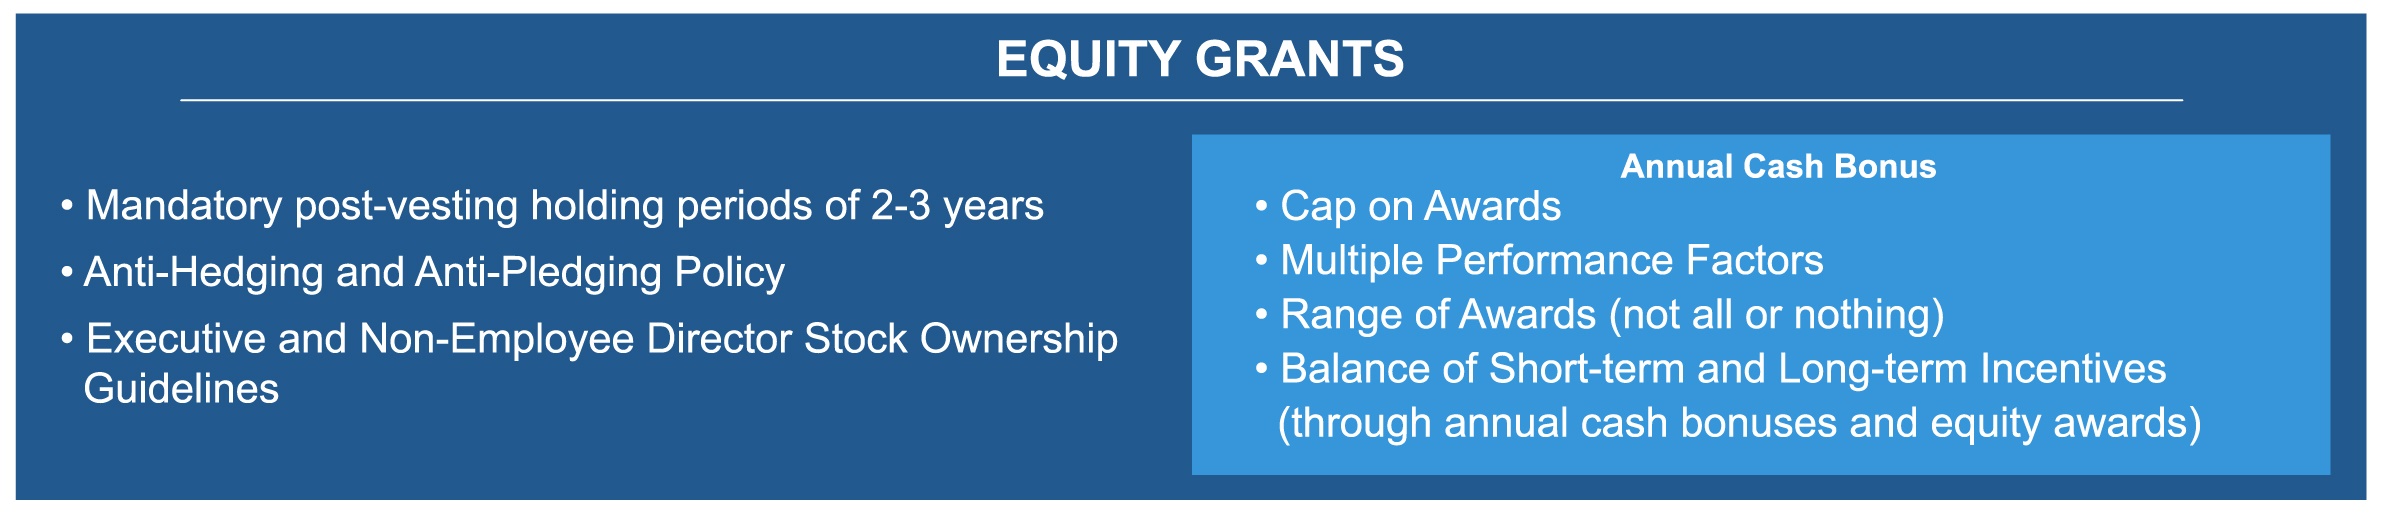 equitygrants.jpg